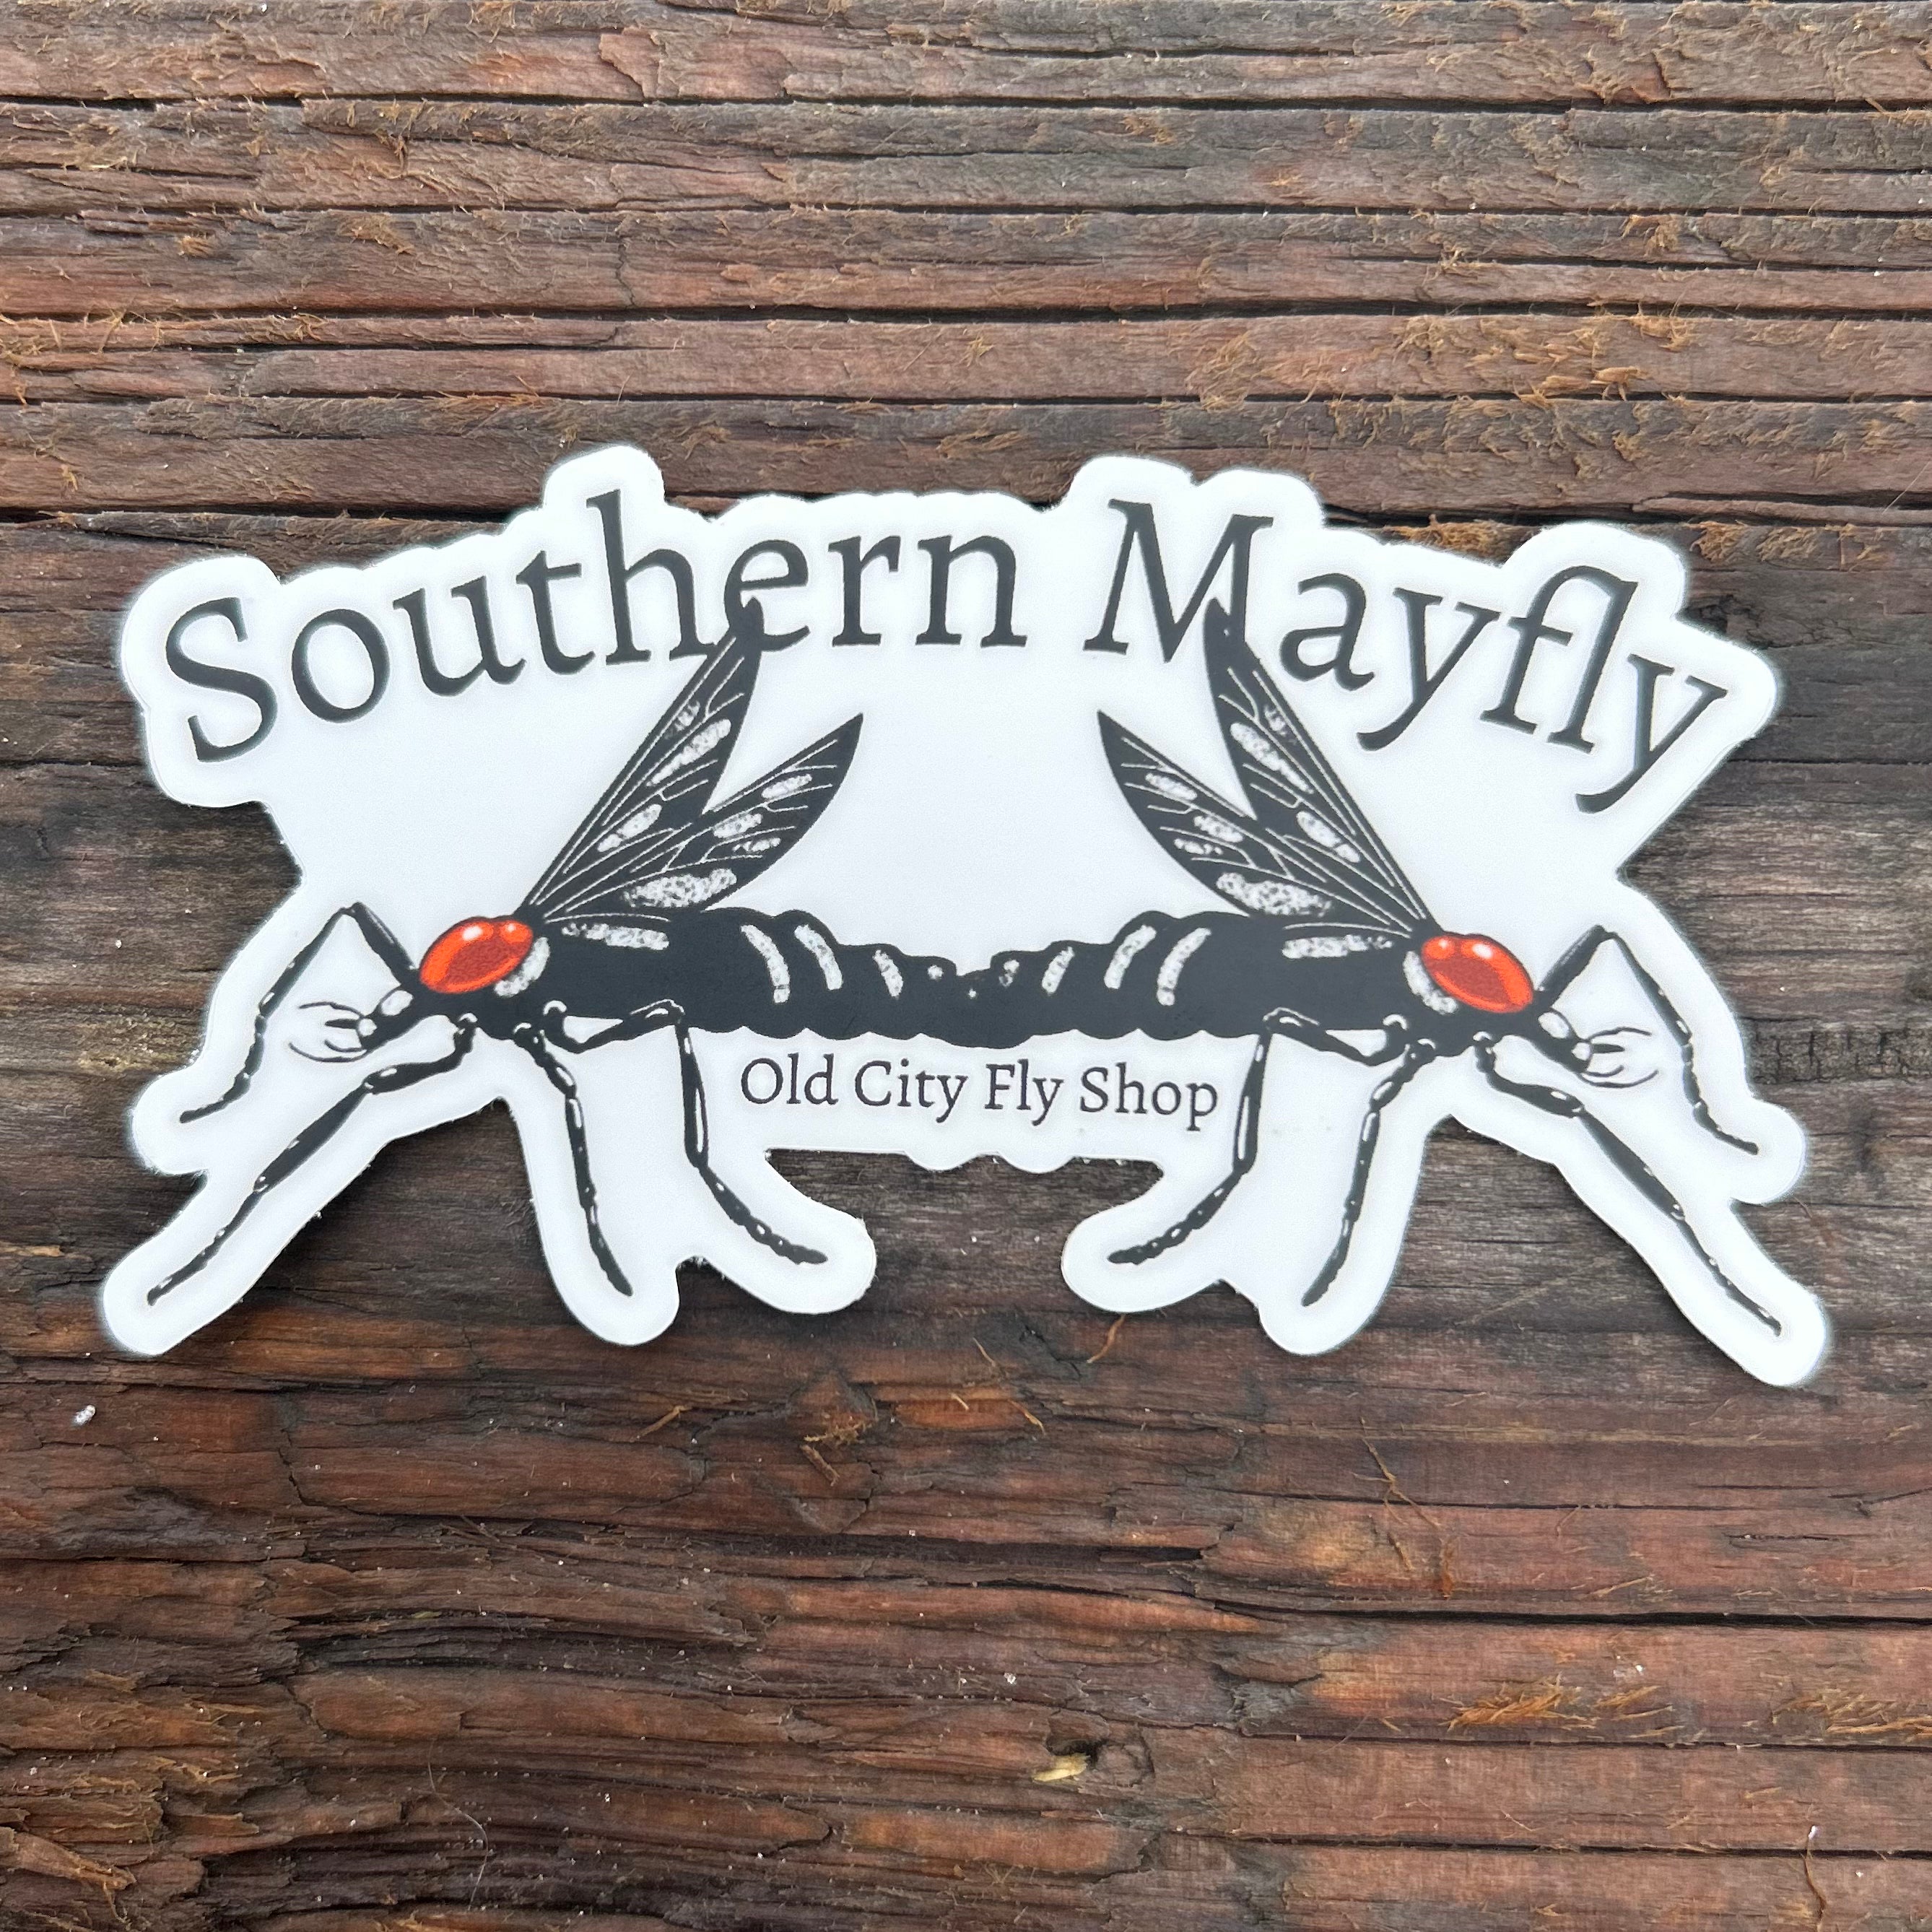 Southern Mayfly sticker